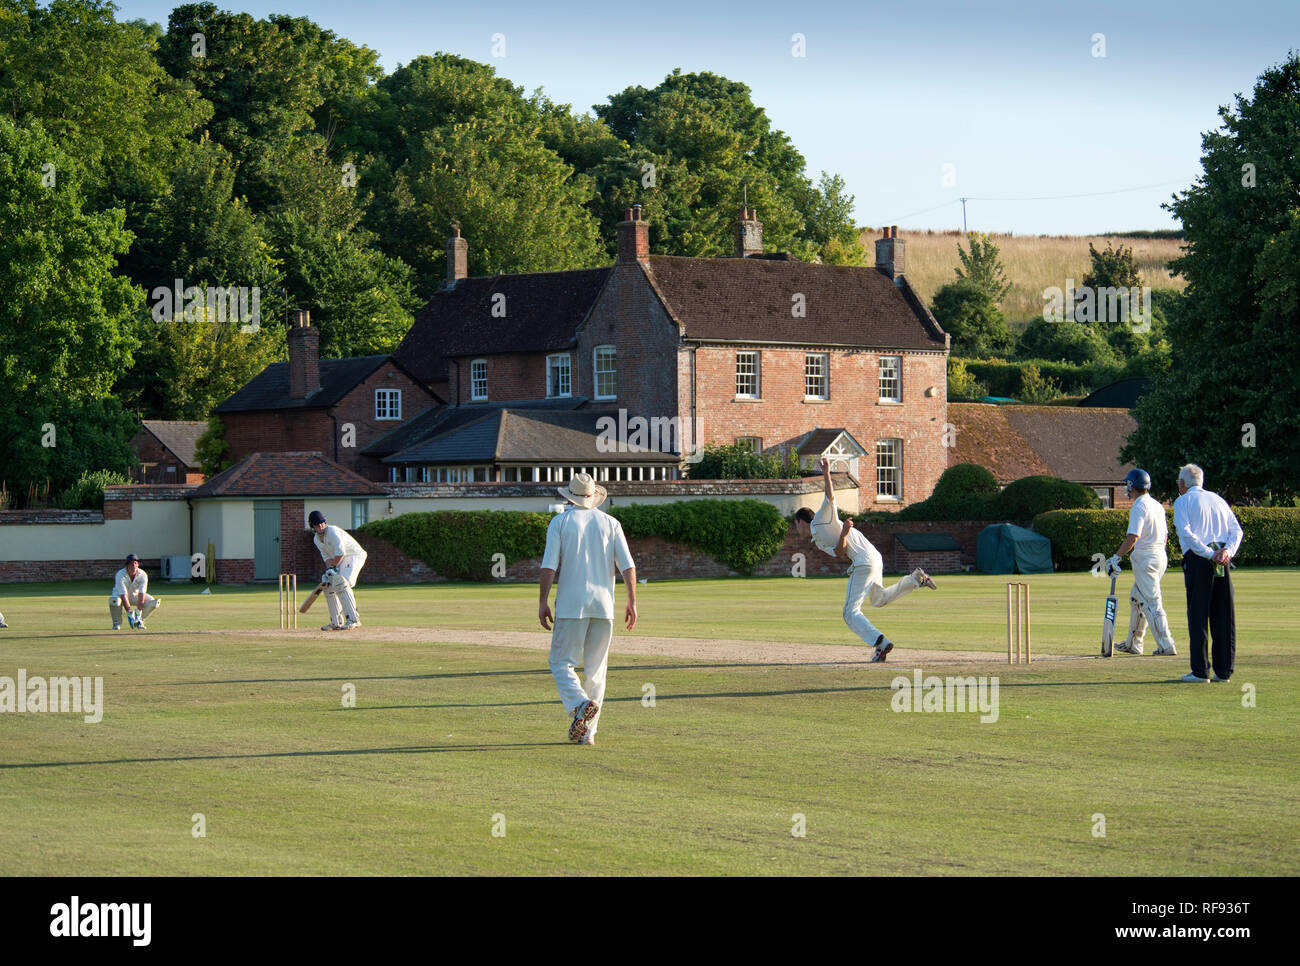 Maison Bowerswaine Gussage, Tous les Saints, Dorset, qui comprend son propre terrain de cricket en pleine dimension Banque D'Images